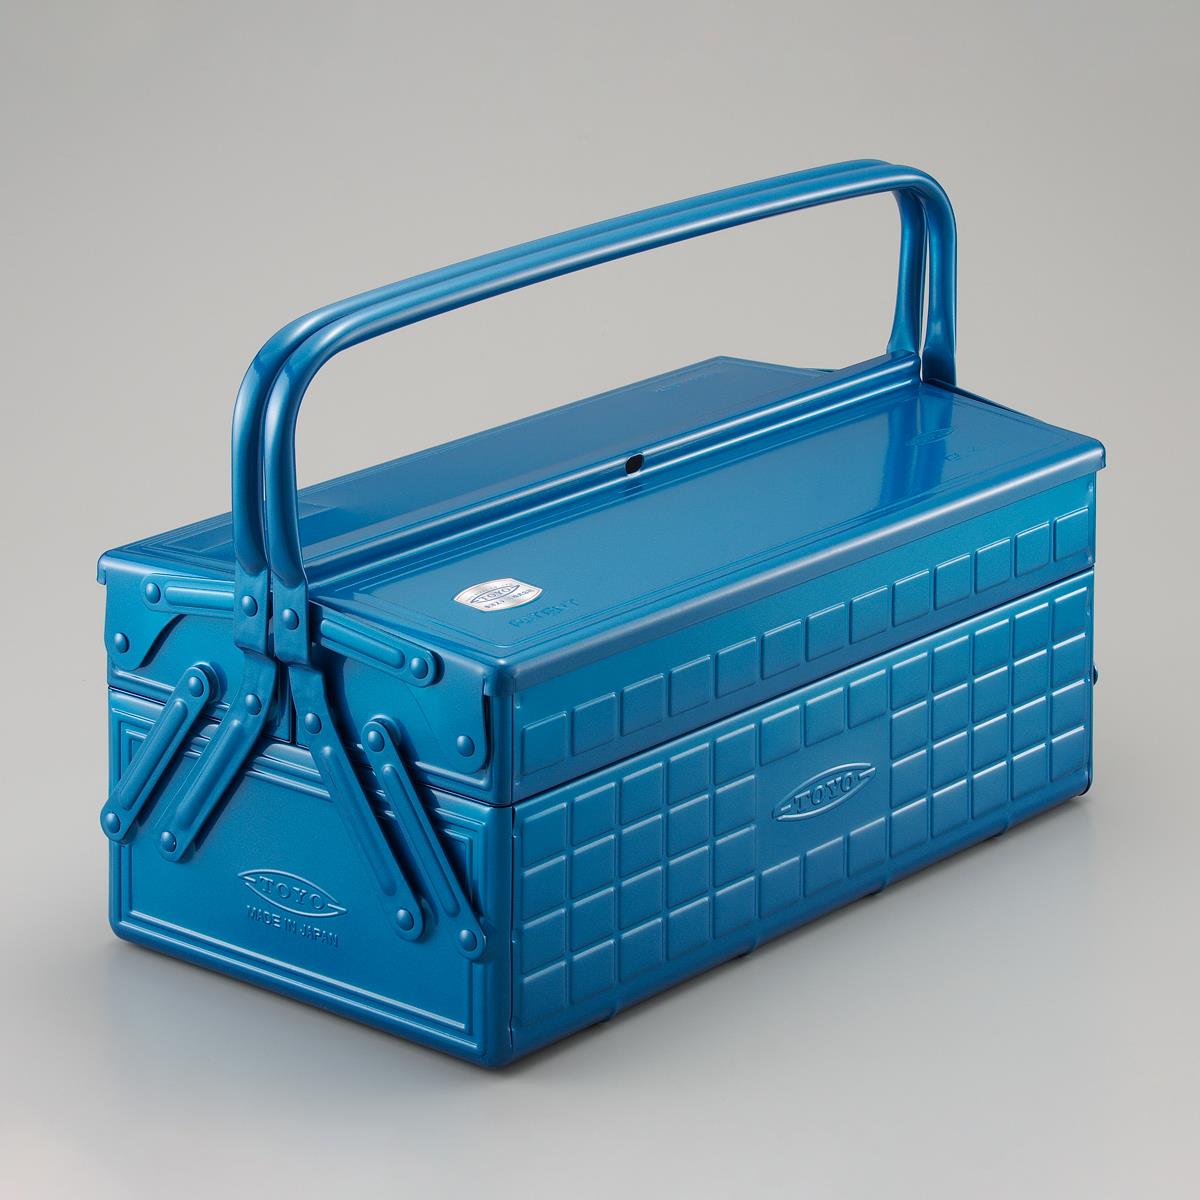 TOYO STEEL - Freitragender Werkzeugkasten GL-410 B (Blau)